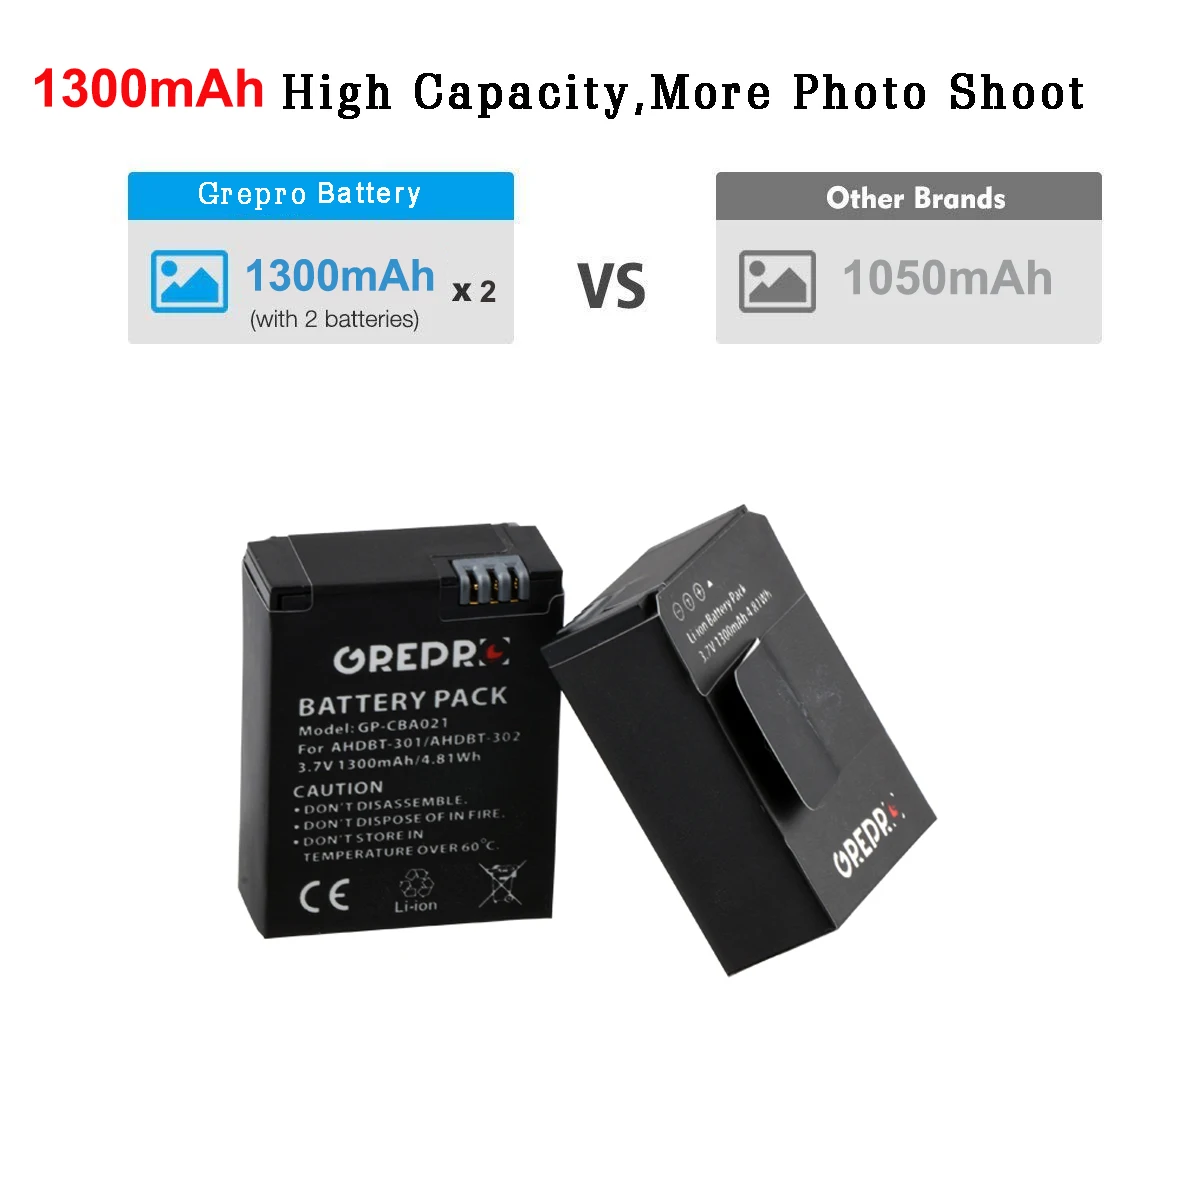 Batteria per GoPro HERO3 edizione nera con caricabatteria - 1300mAh AHDBT-302 26